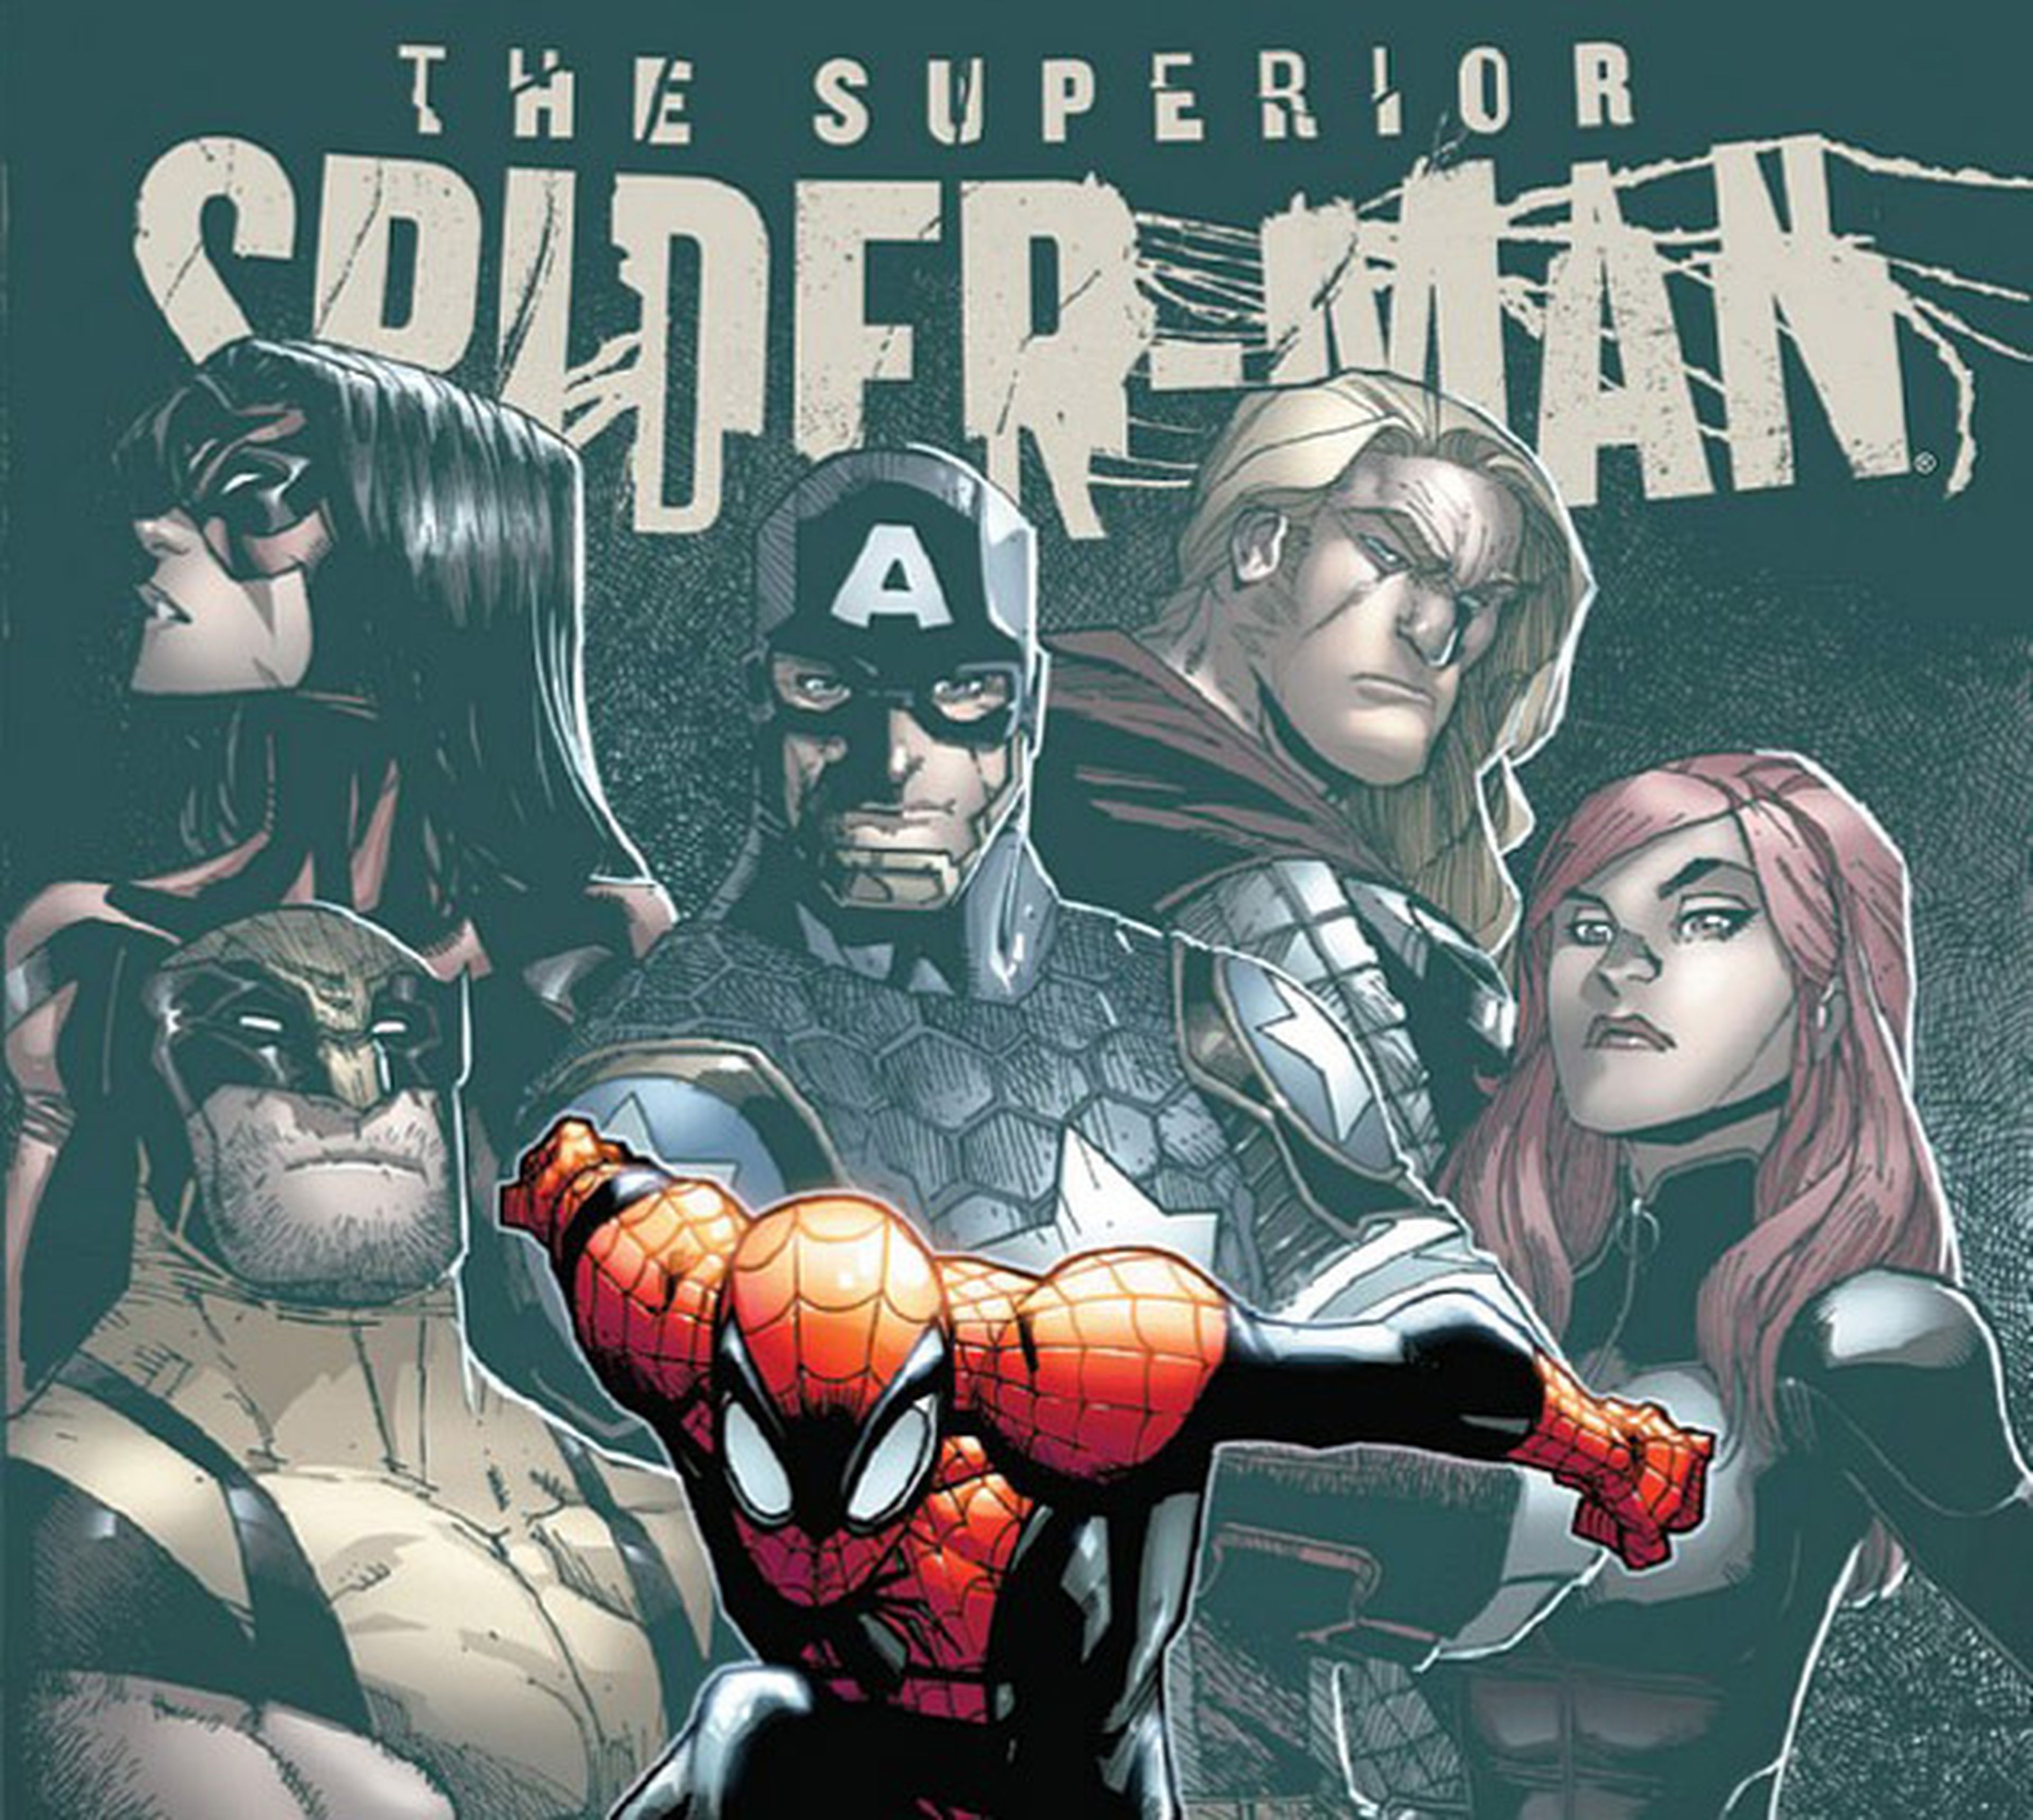 Avance EEUU: ¿El regreso de Peter Parker a Spider-man?